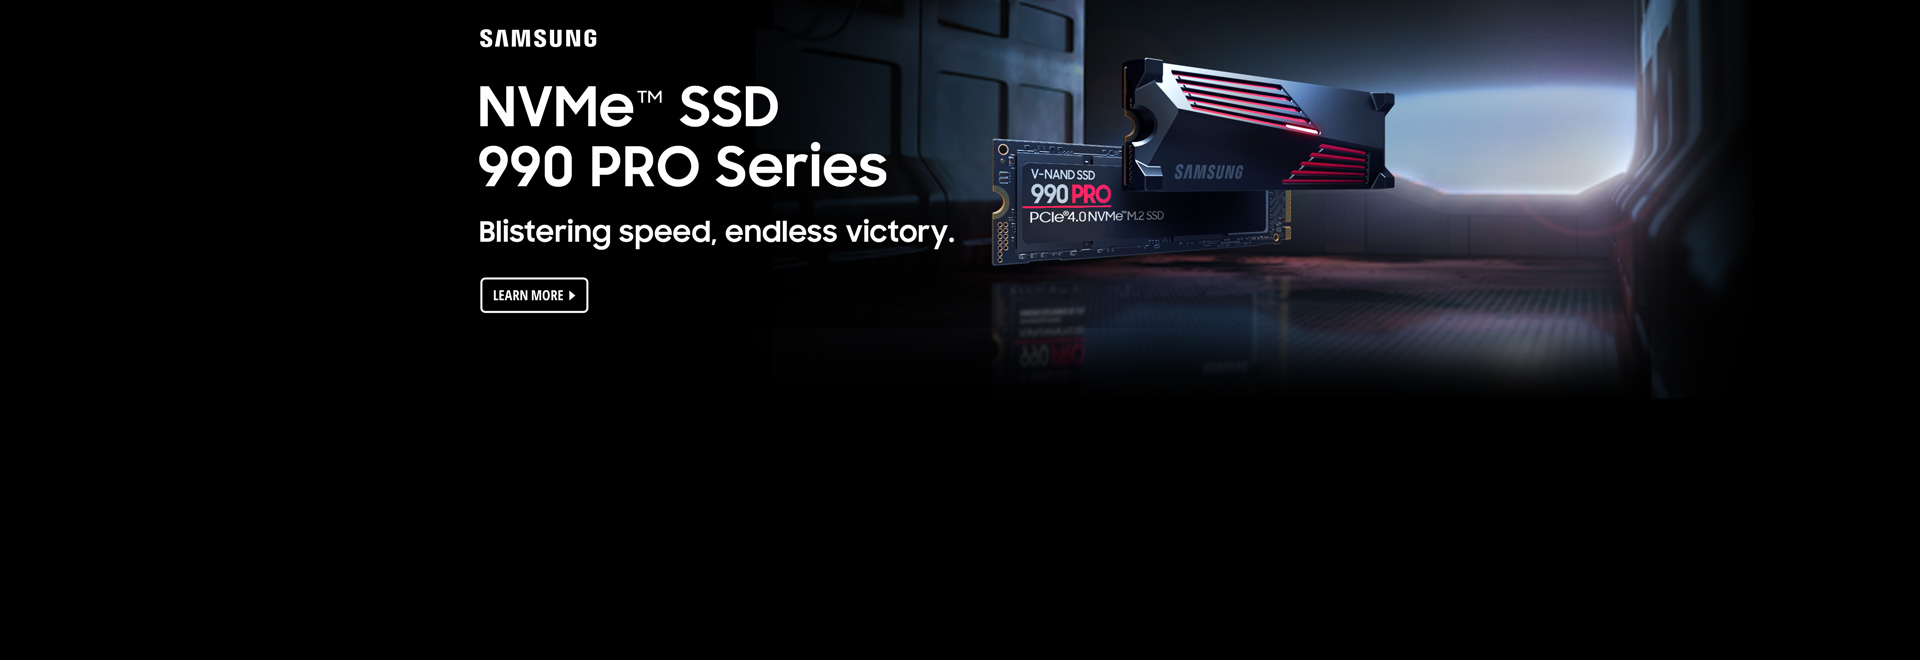 MVMe™ SSD 990 PRO Series